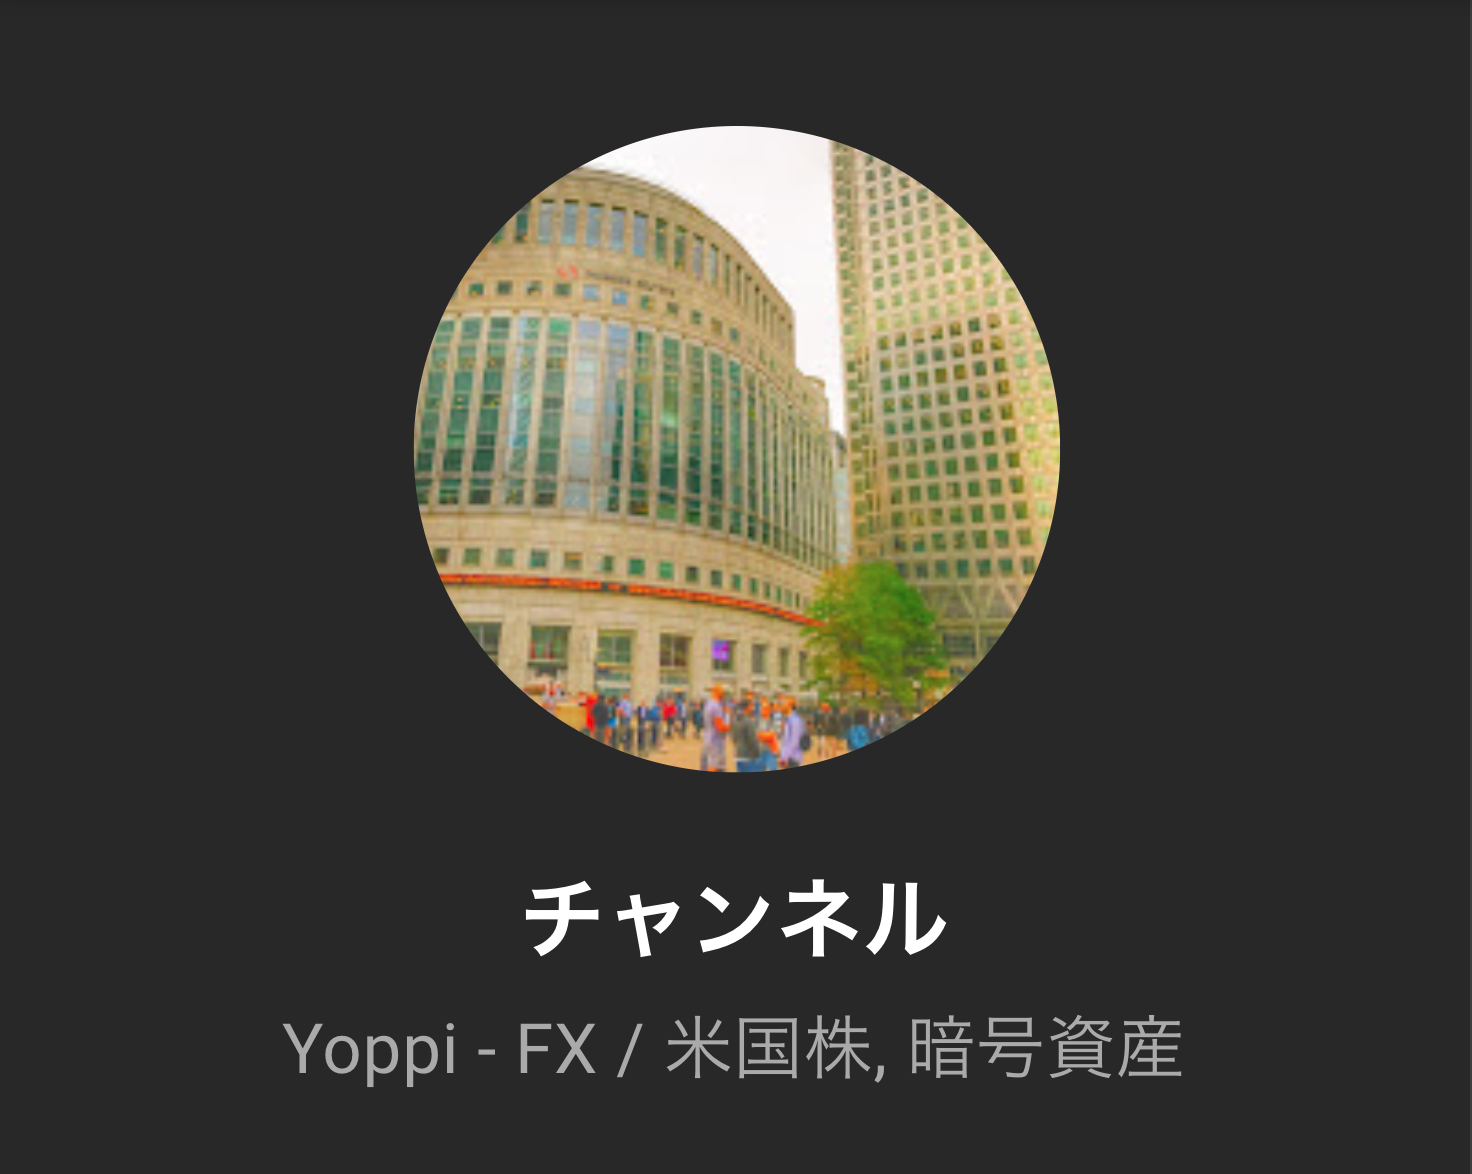 Yoppi - FX 【トレード履歴と振り返り】